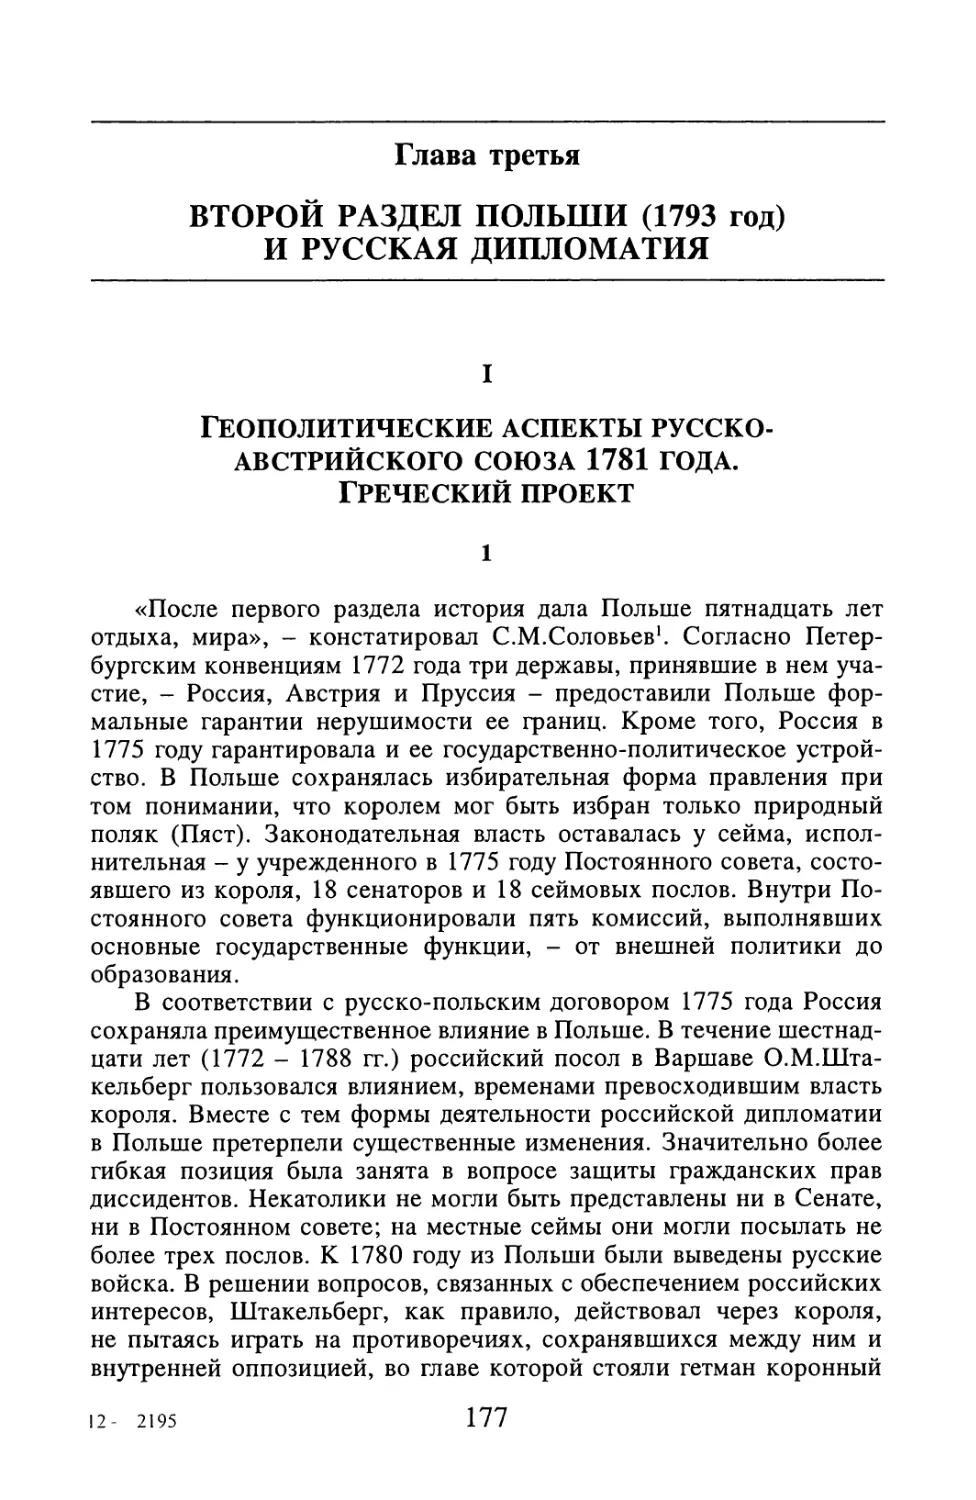 I. Геополитические аспекты русско-австрийского союза 1781 года. Греческий проект